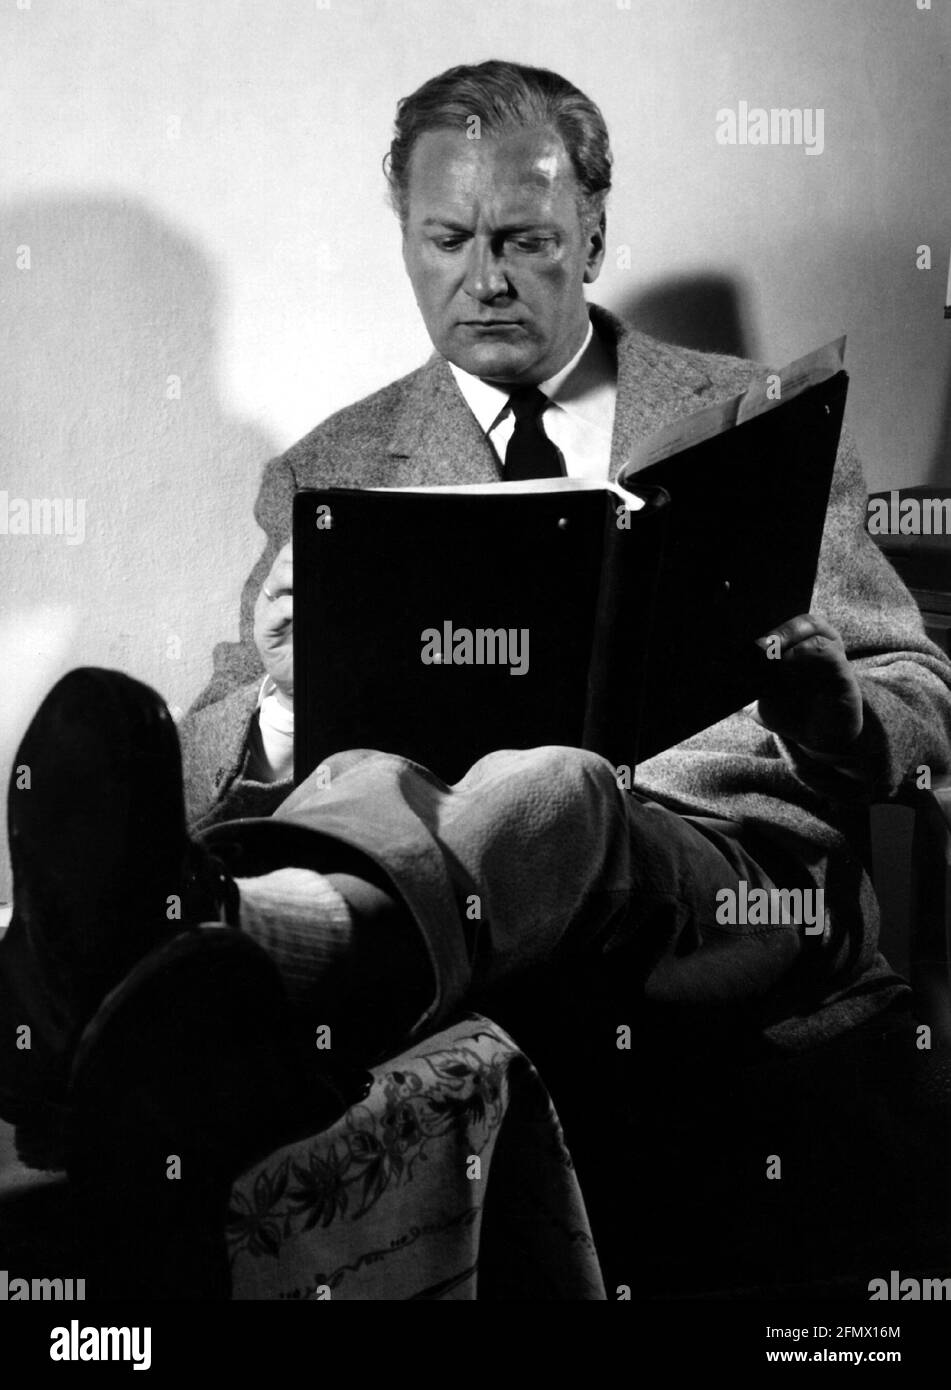 Jürgen, Curd, 13.12.1915 - 18.6.1982, deutscher Schauspieler, in voller Länge, DREHBUCH LESEN, ZUSÄTZLICHE-RIGHTS-CLEARANCE-INFO-NOT-AVAILABLE Stockfoto